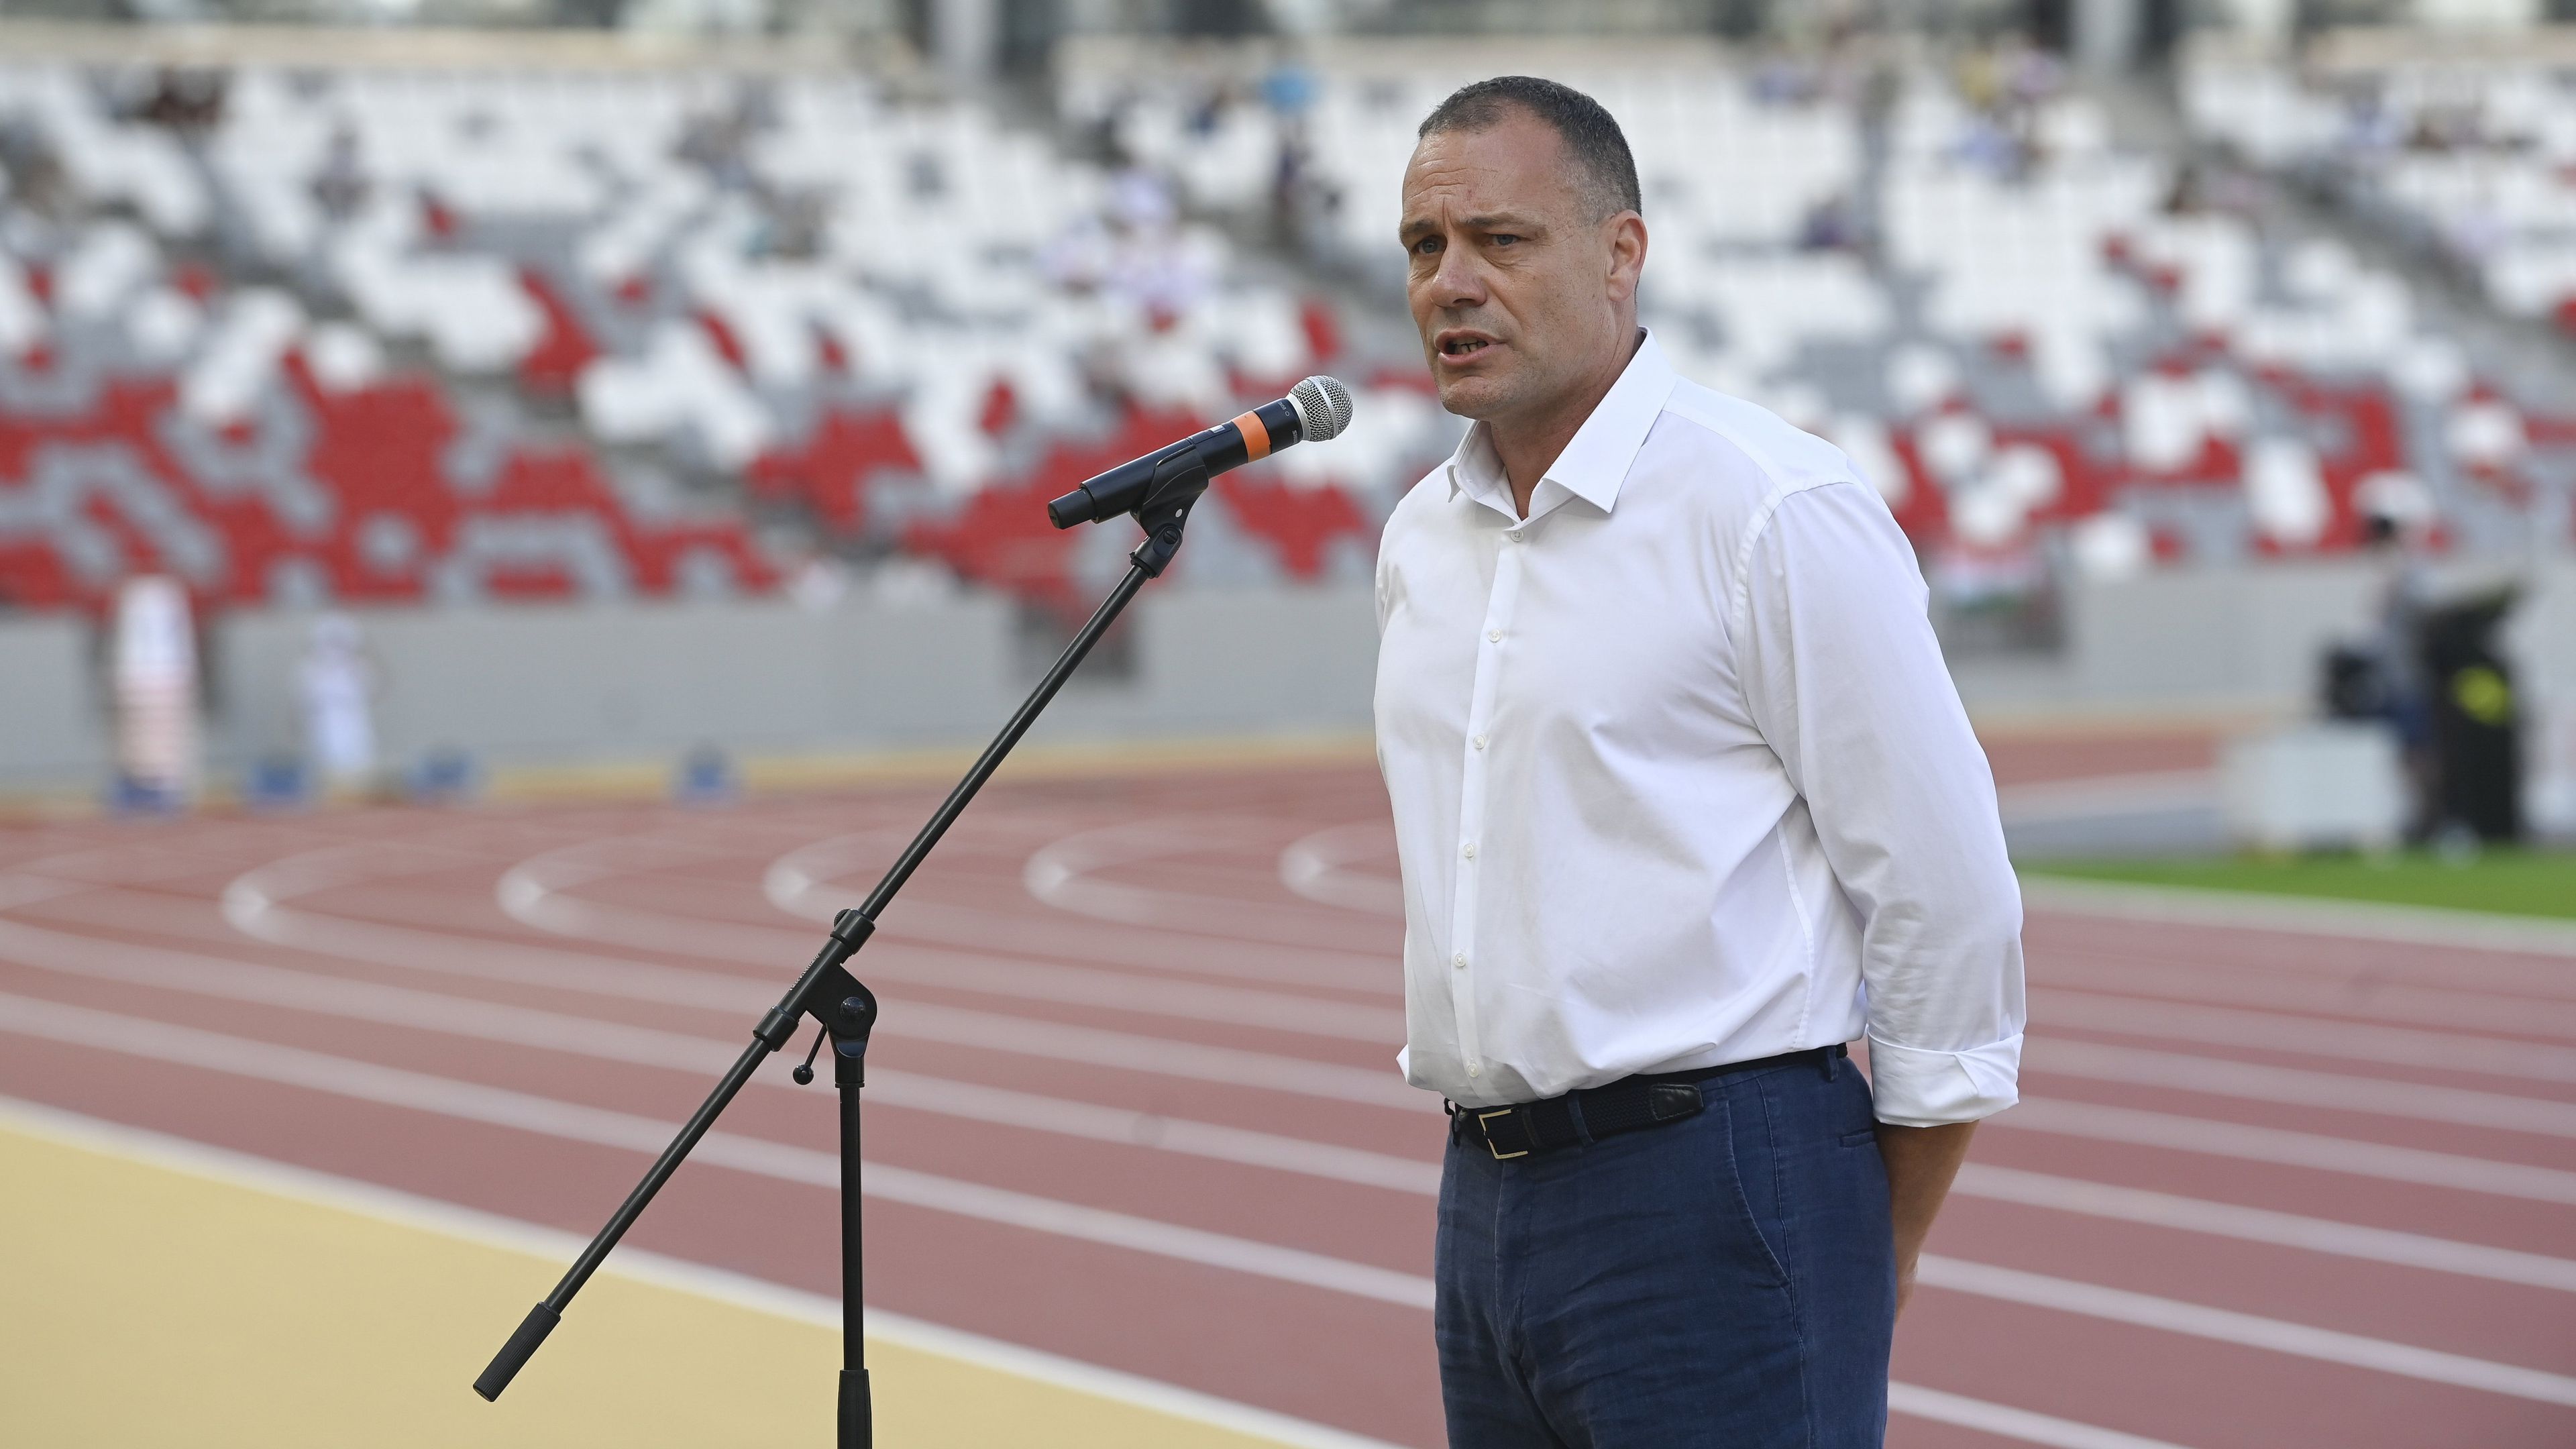 Gyulai Miklós a világbajnokság főpróbáján, az országos bajnokságon. Az elnök tudja, a vb és a stadion nemcsak nagy esély, de nagy felelősség is a magyar atlétikának (Fotó: MTI/MTVA)